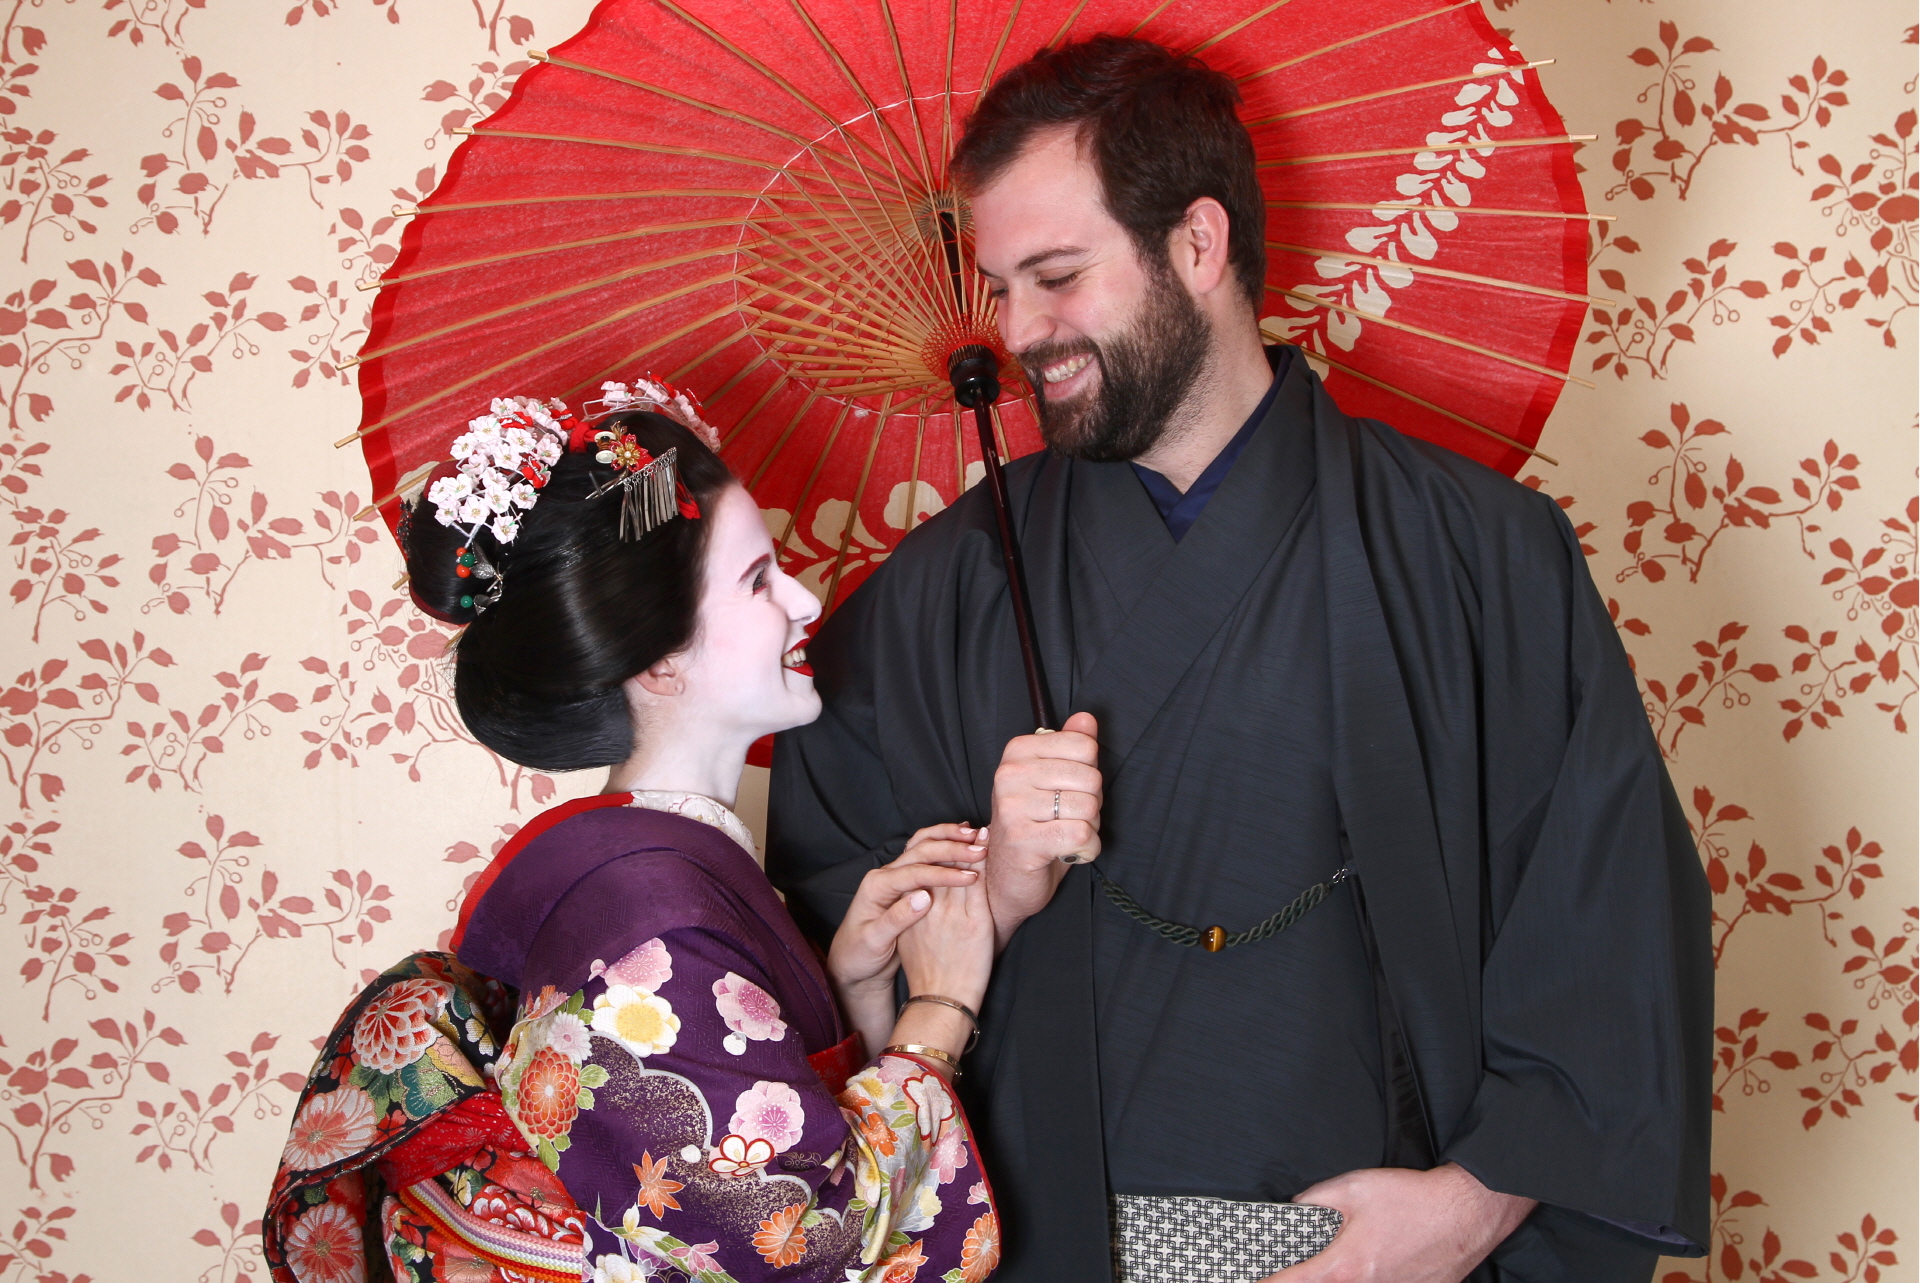 Transform into a Maiko and Samurai - Couple Plan